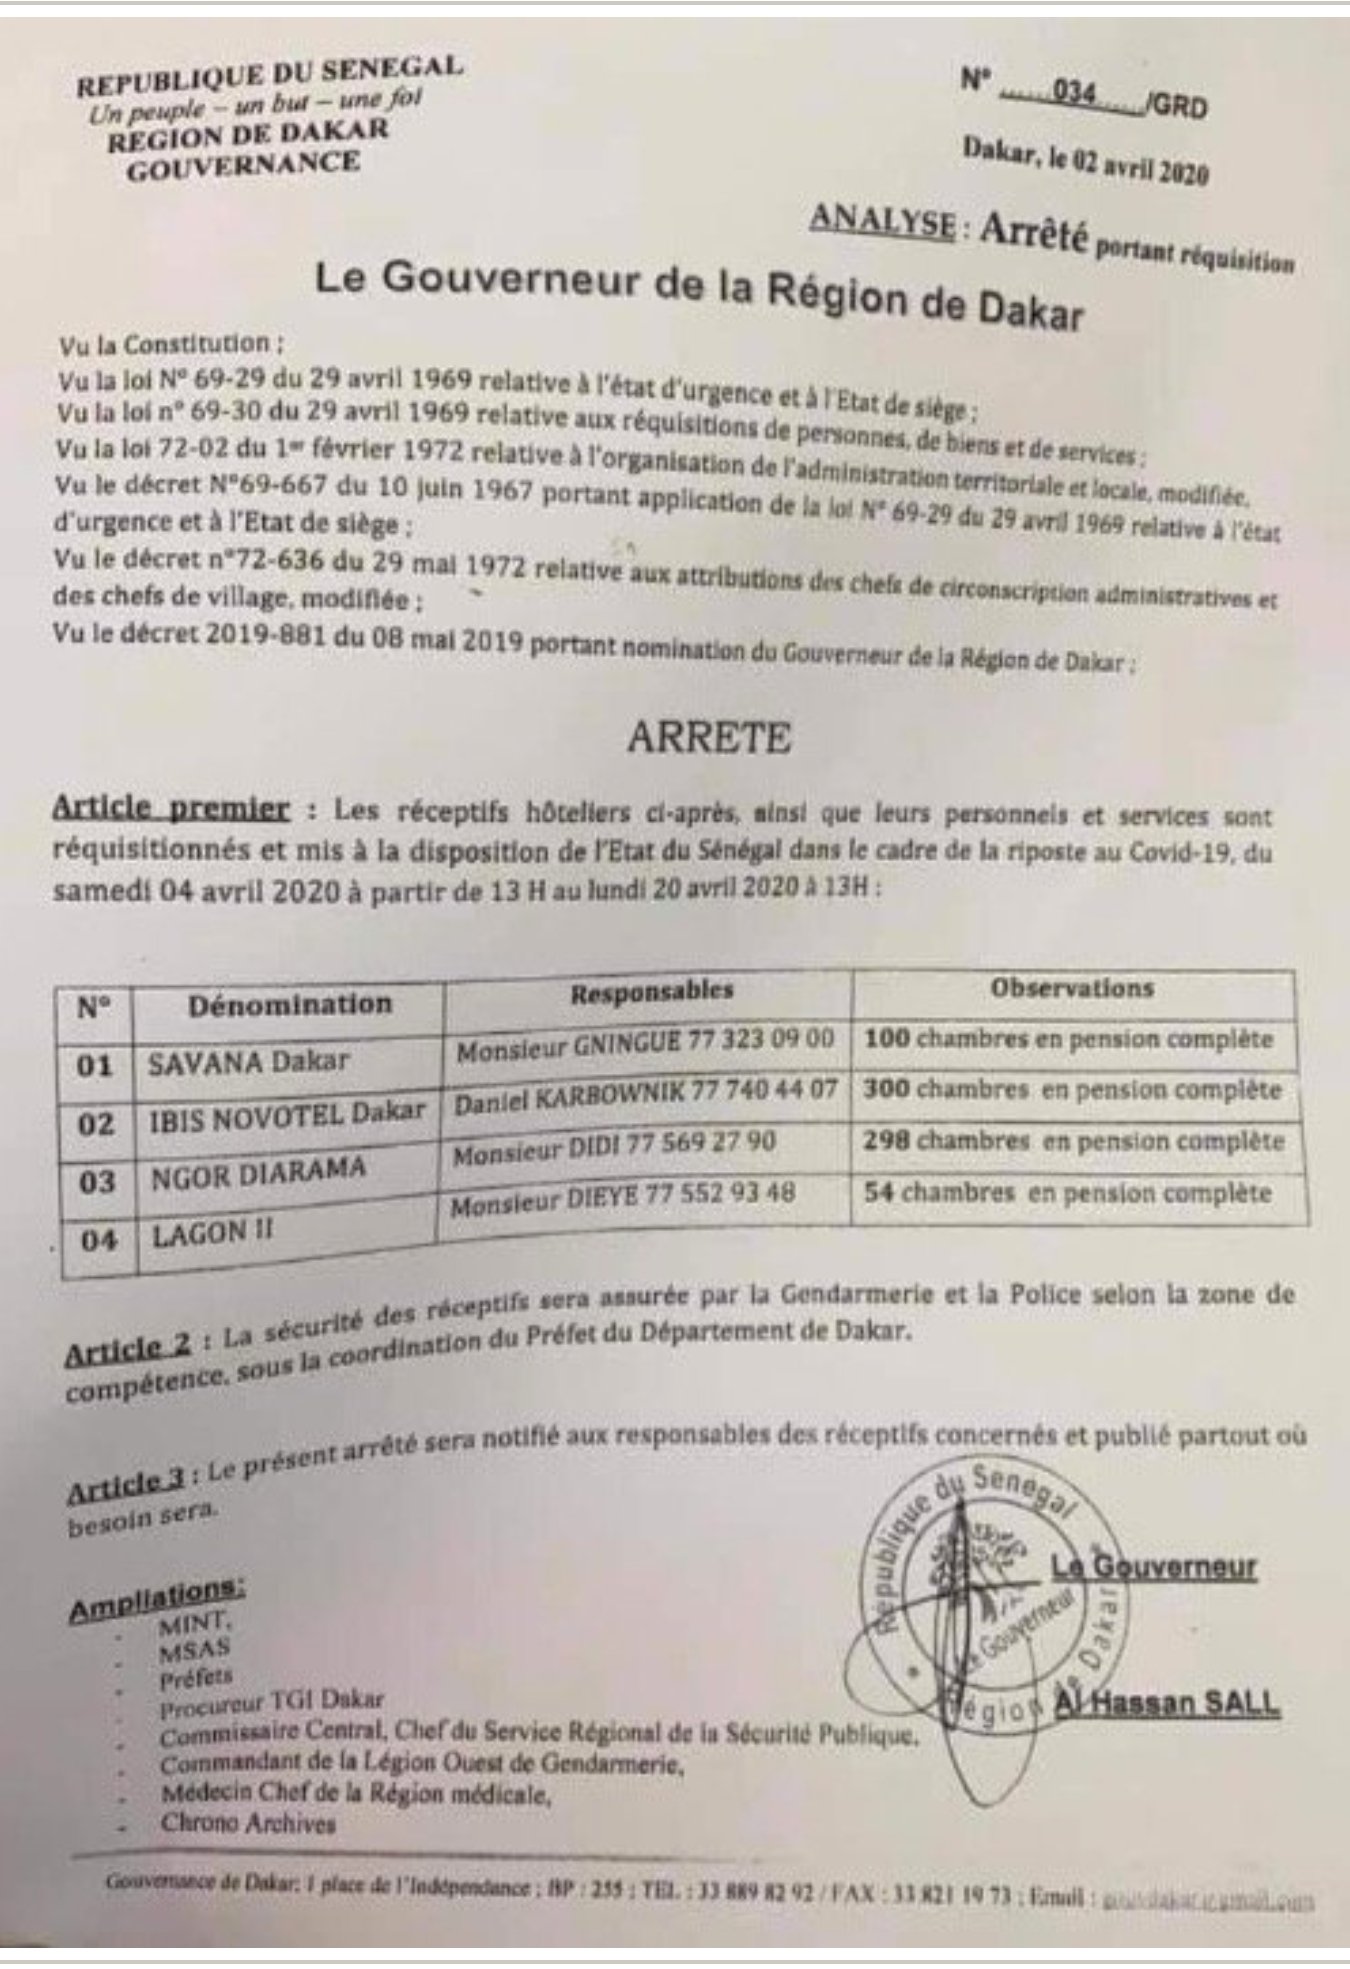 Coronavirus Sénégal: Et si on parlait du surnombre de chambres dans l’arrêté de réquisition des hôtels du Gouverneur de Dakar...